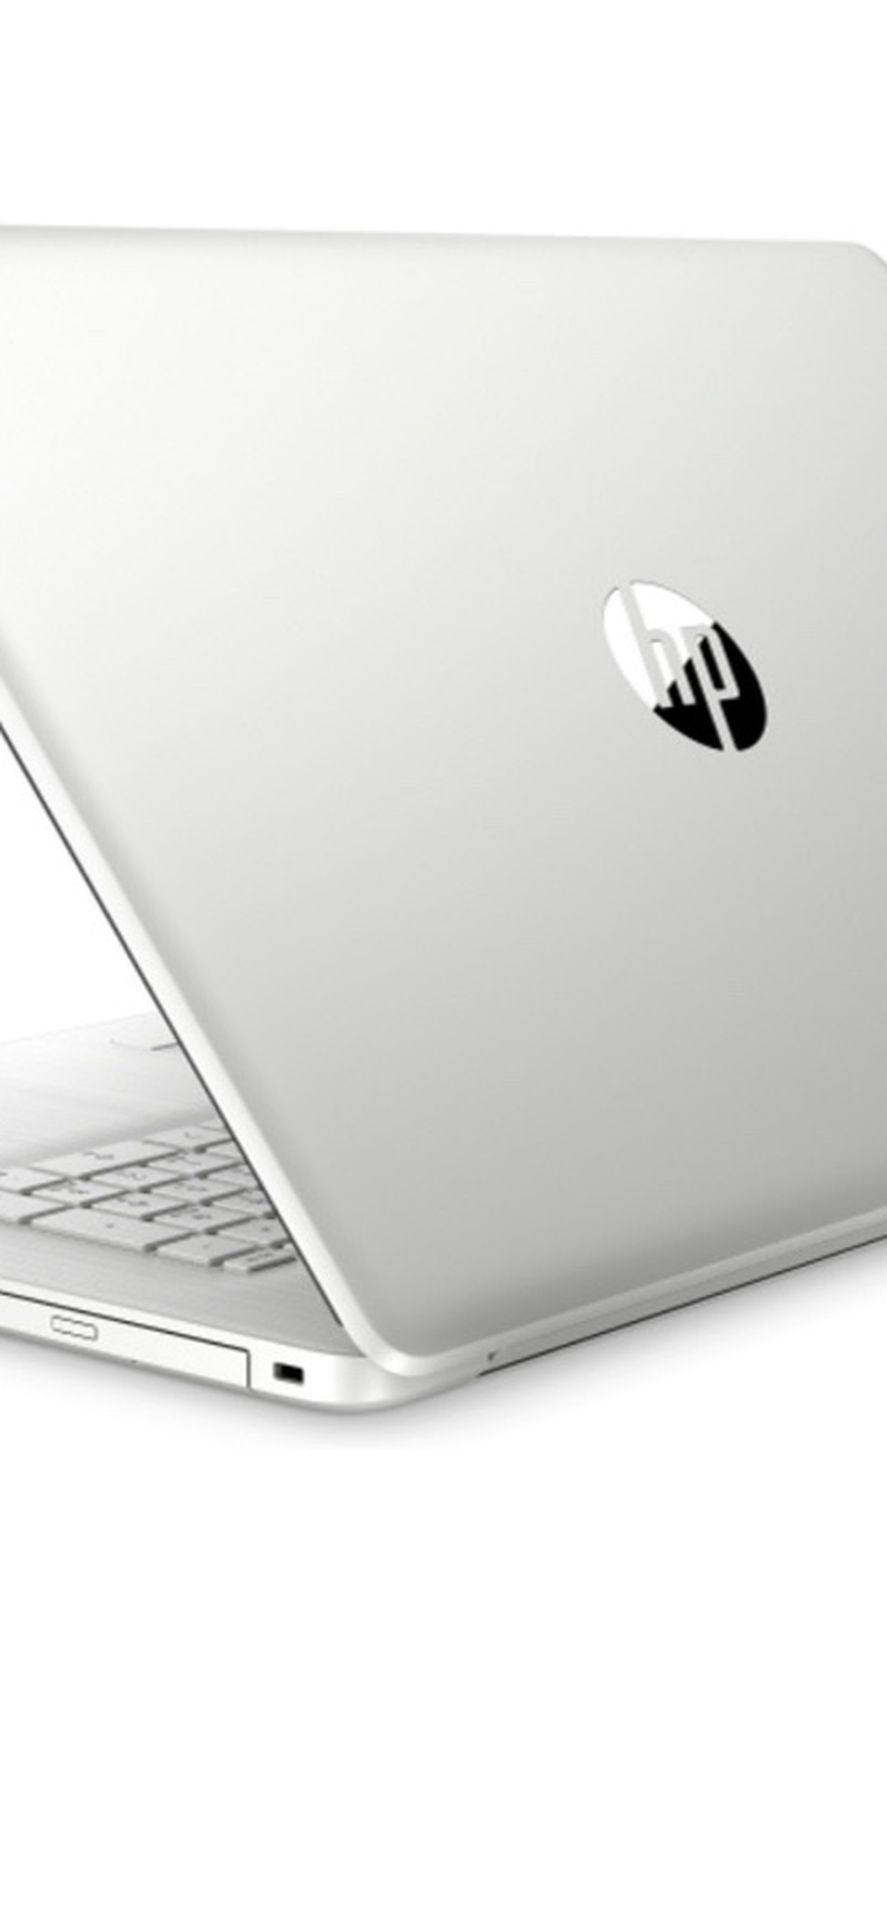 HP 17” i3 Dual Core Notebook